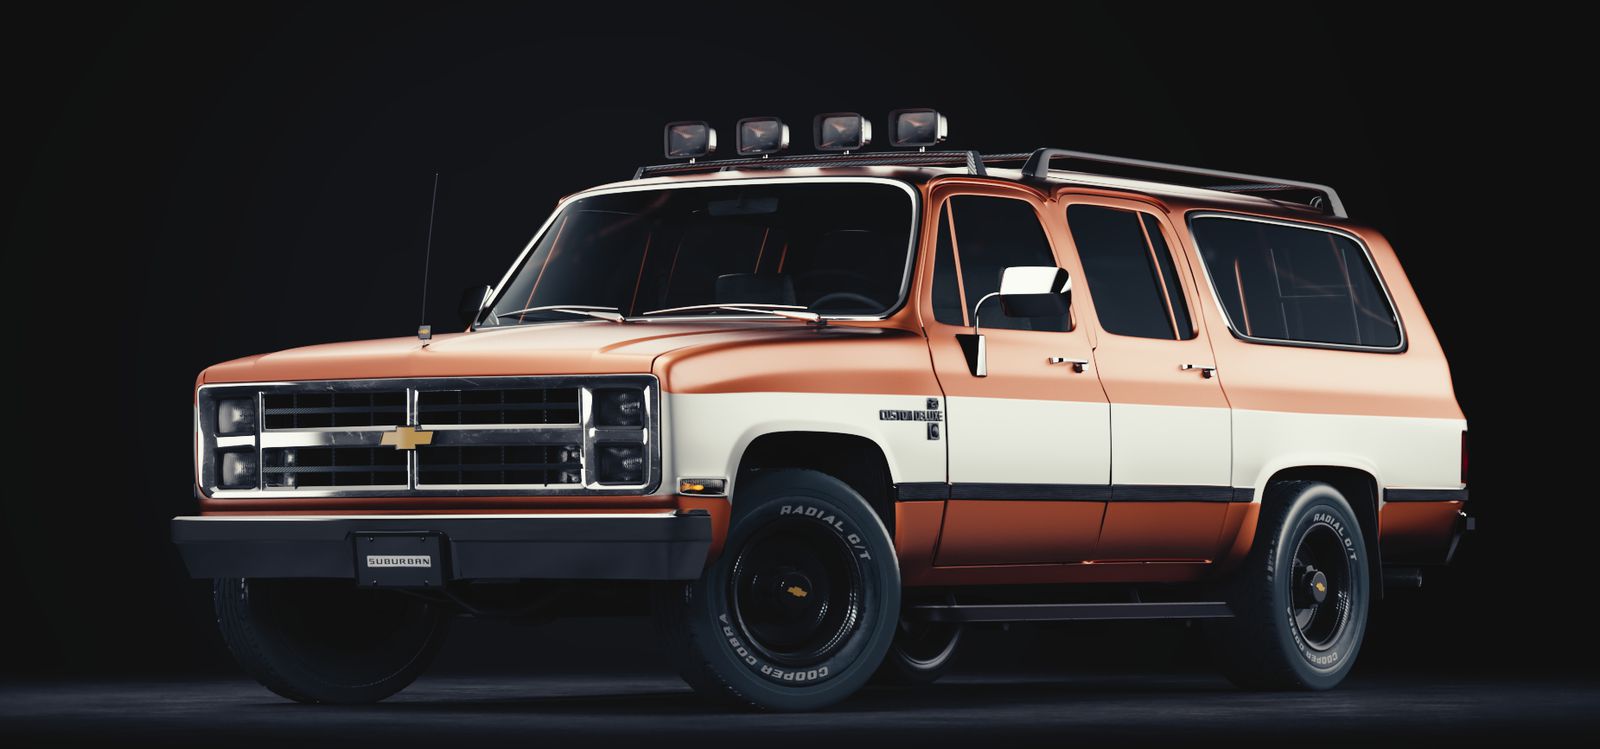 Chevrolet Suburban 8-го поколения выпускался с 1973 года в течение 19 лет!